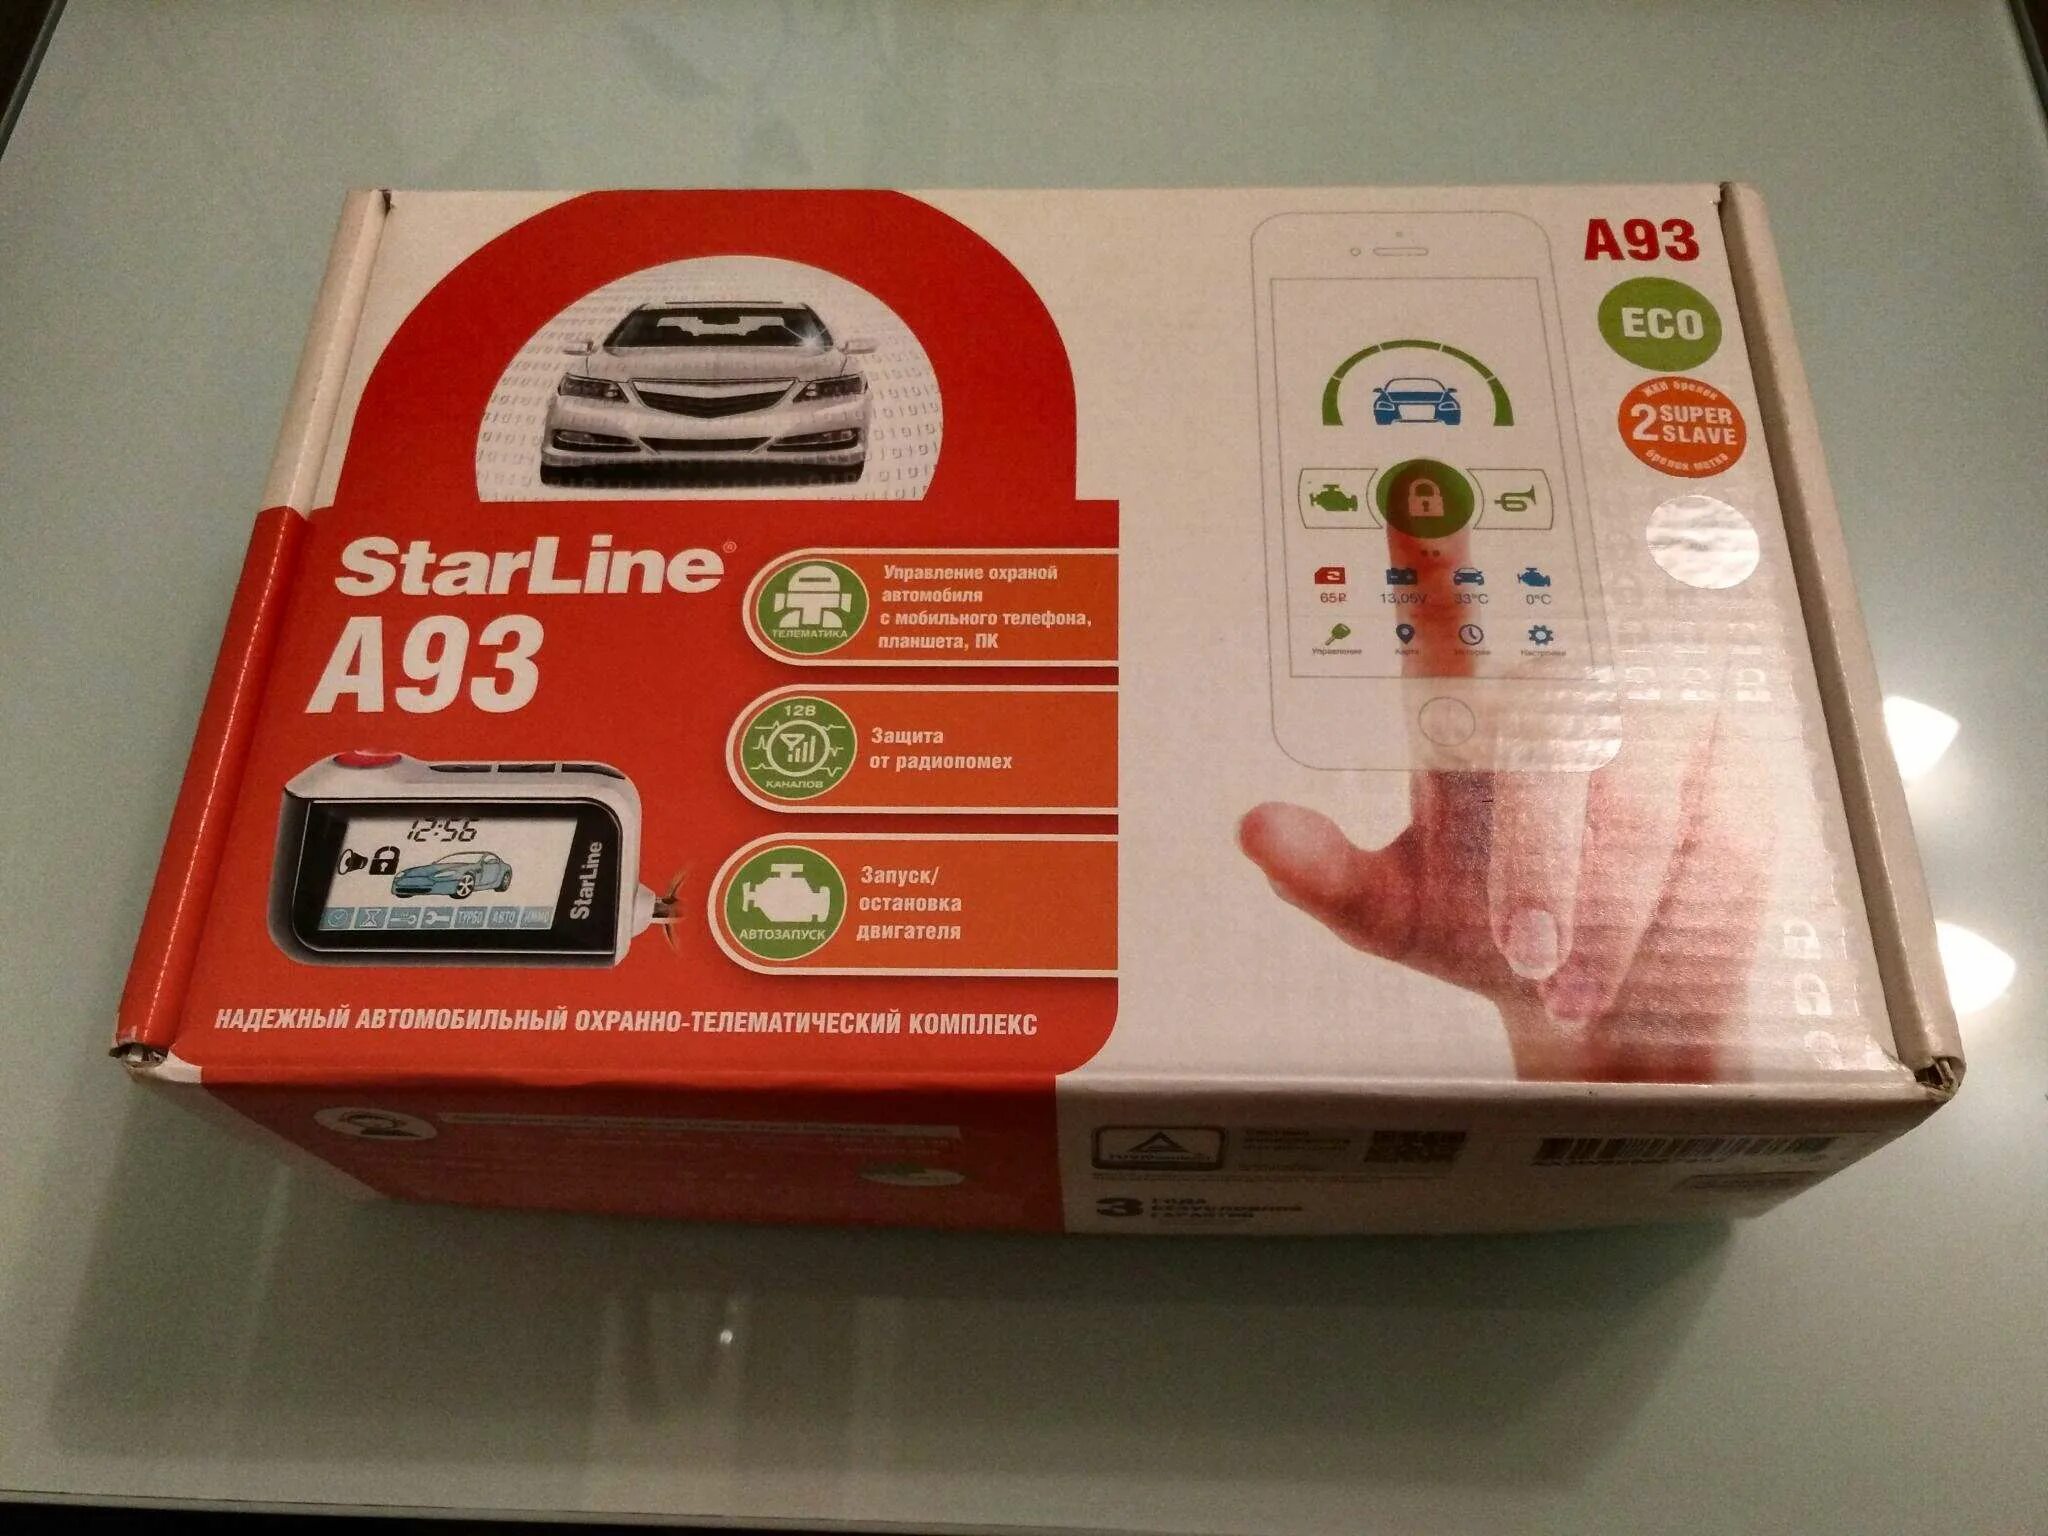 Автосигнализация starline a93 eco. STARLINE a93 Eco. Старлайн а93 Eco. STARLINE a93 v2 Eco.